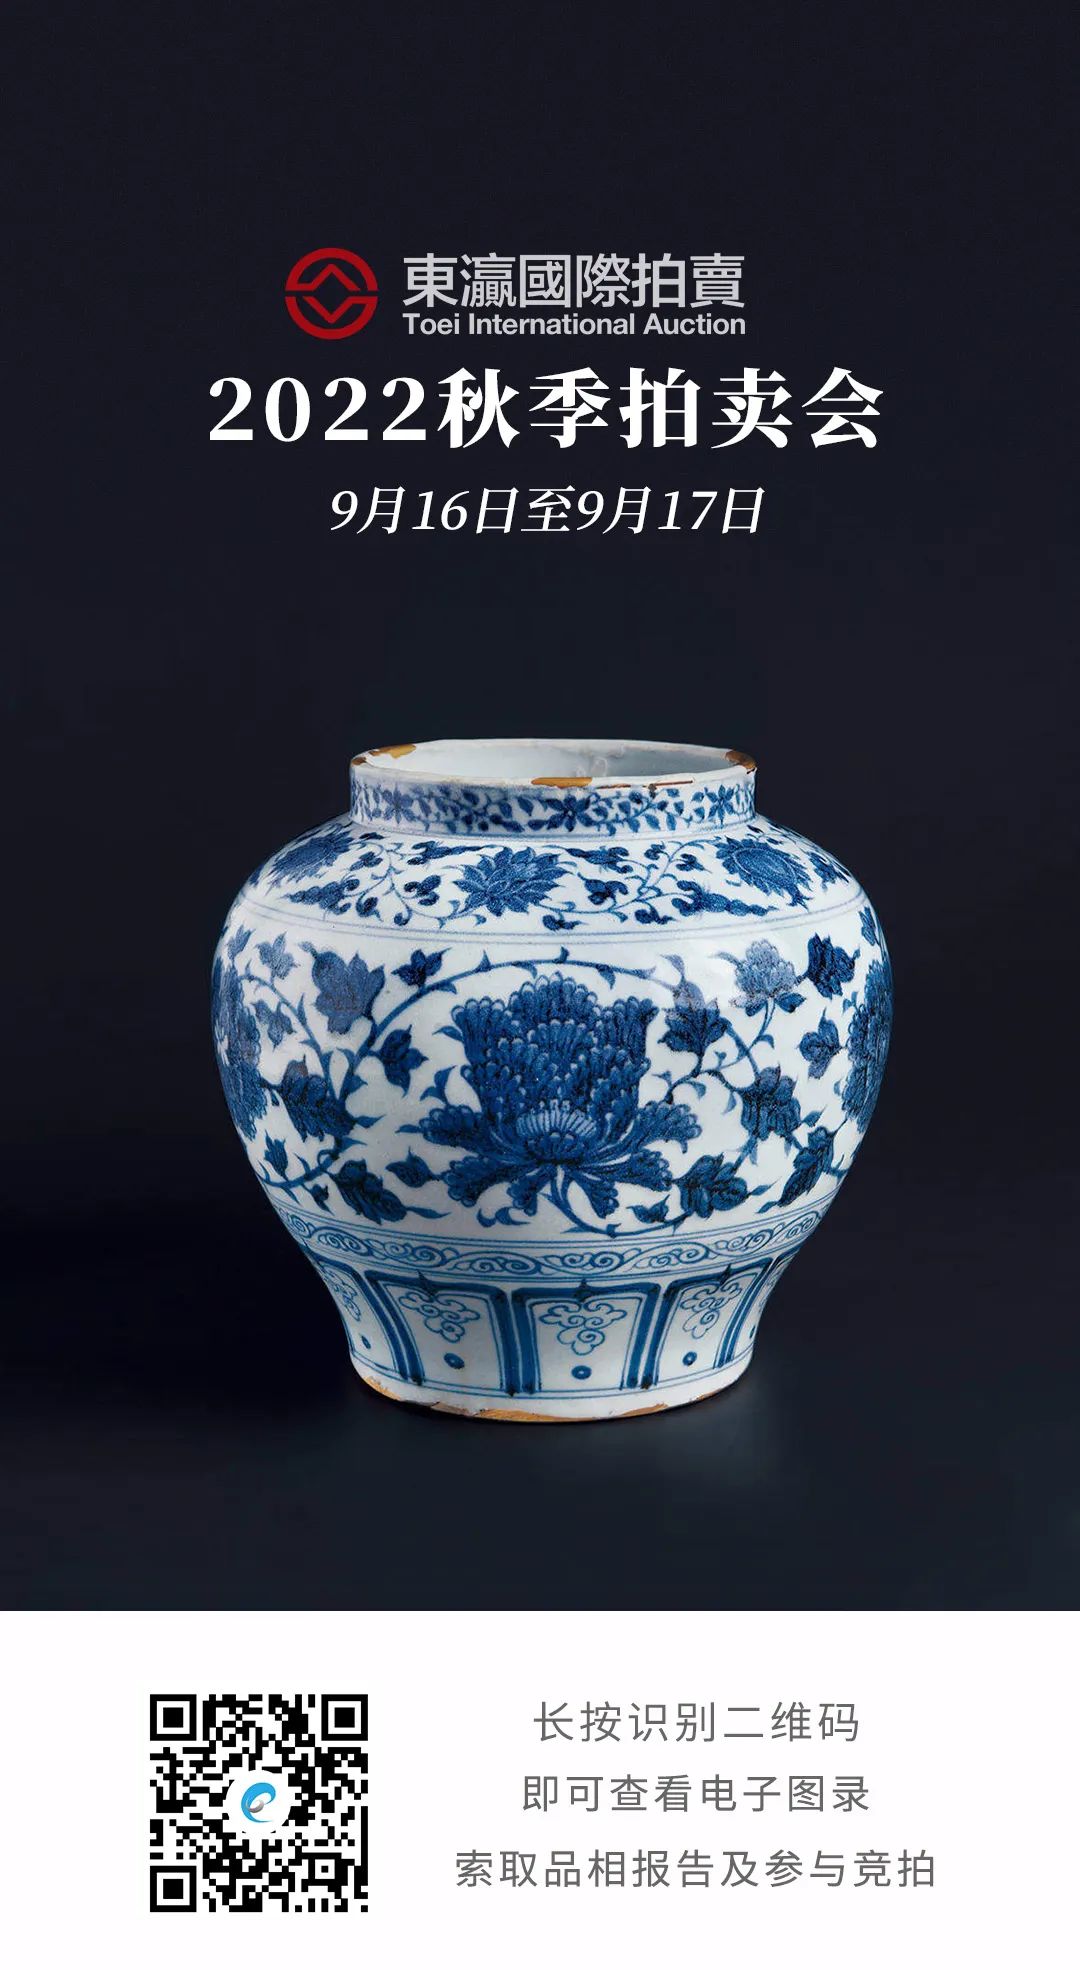 中国美術 墨地菊紋樣花瓶 超美品 - 美術品